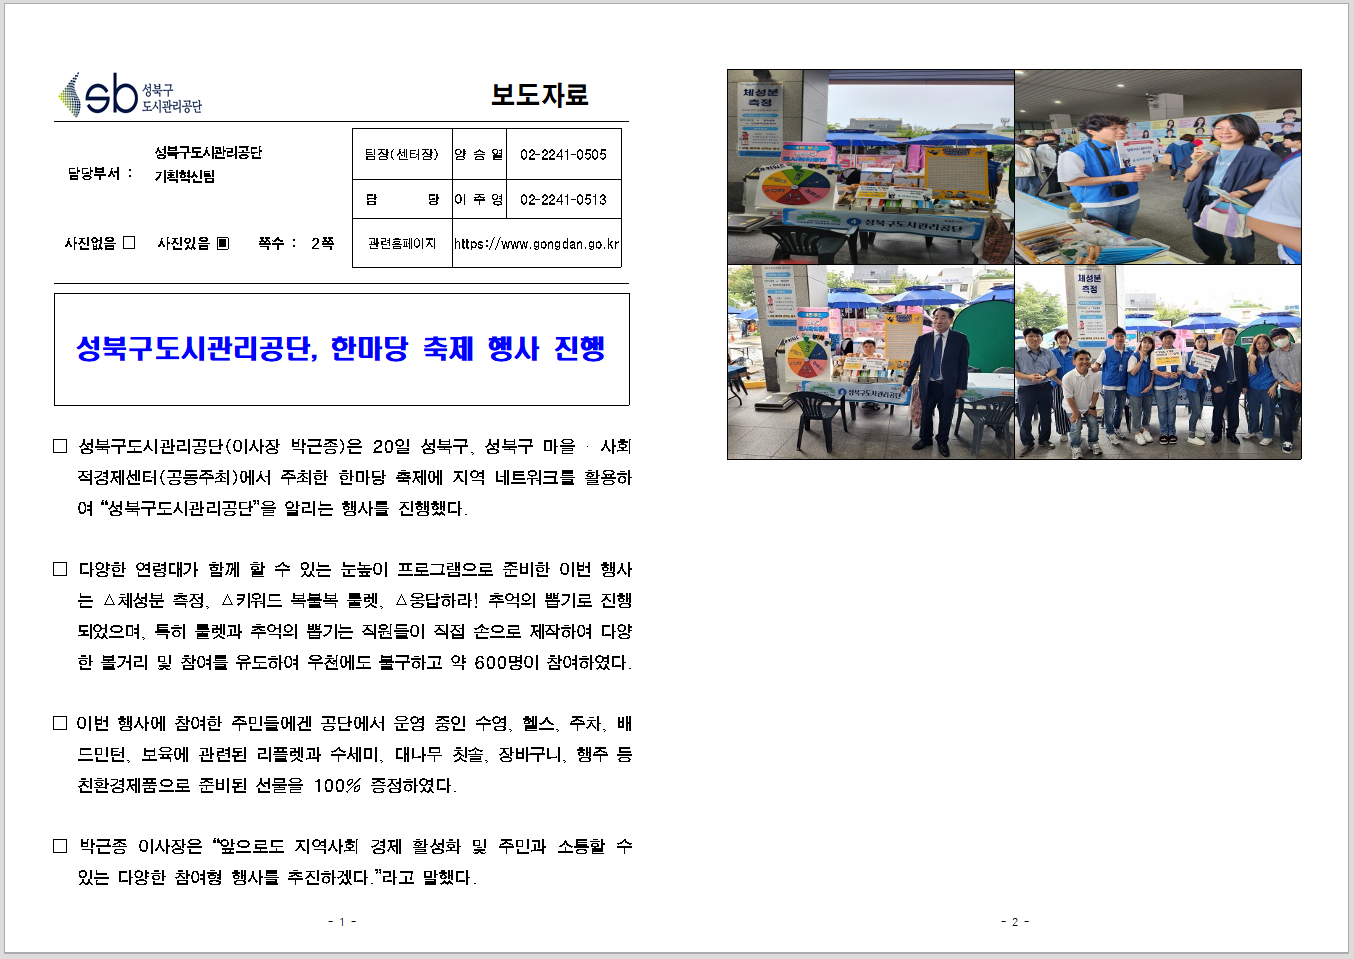 성북구도시관리공단, 한마당 축제 행사 진행 보도자료